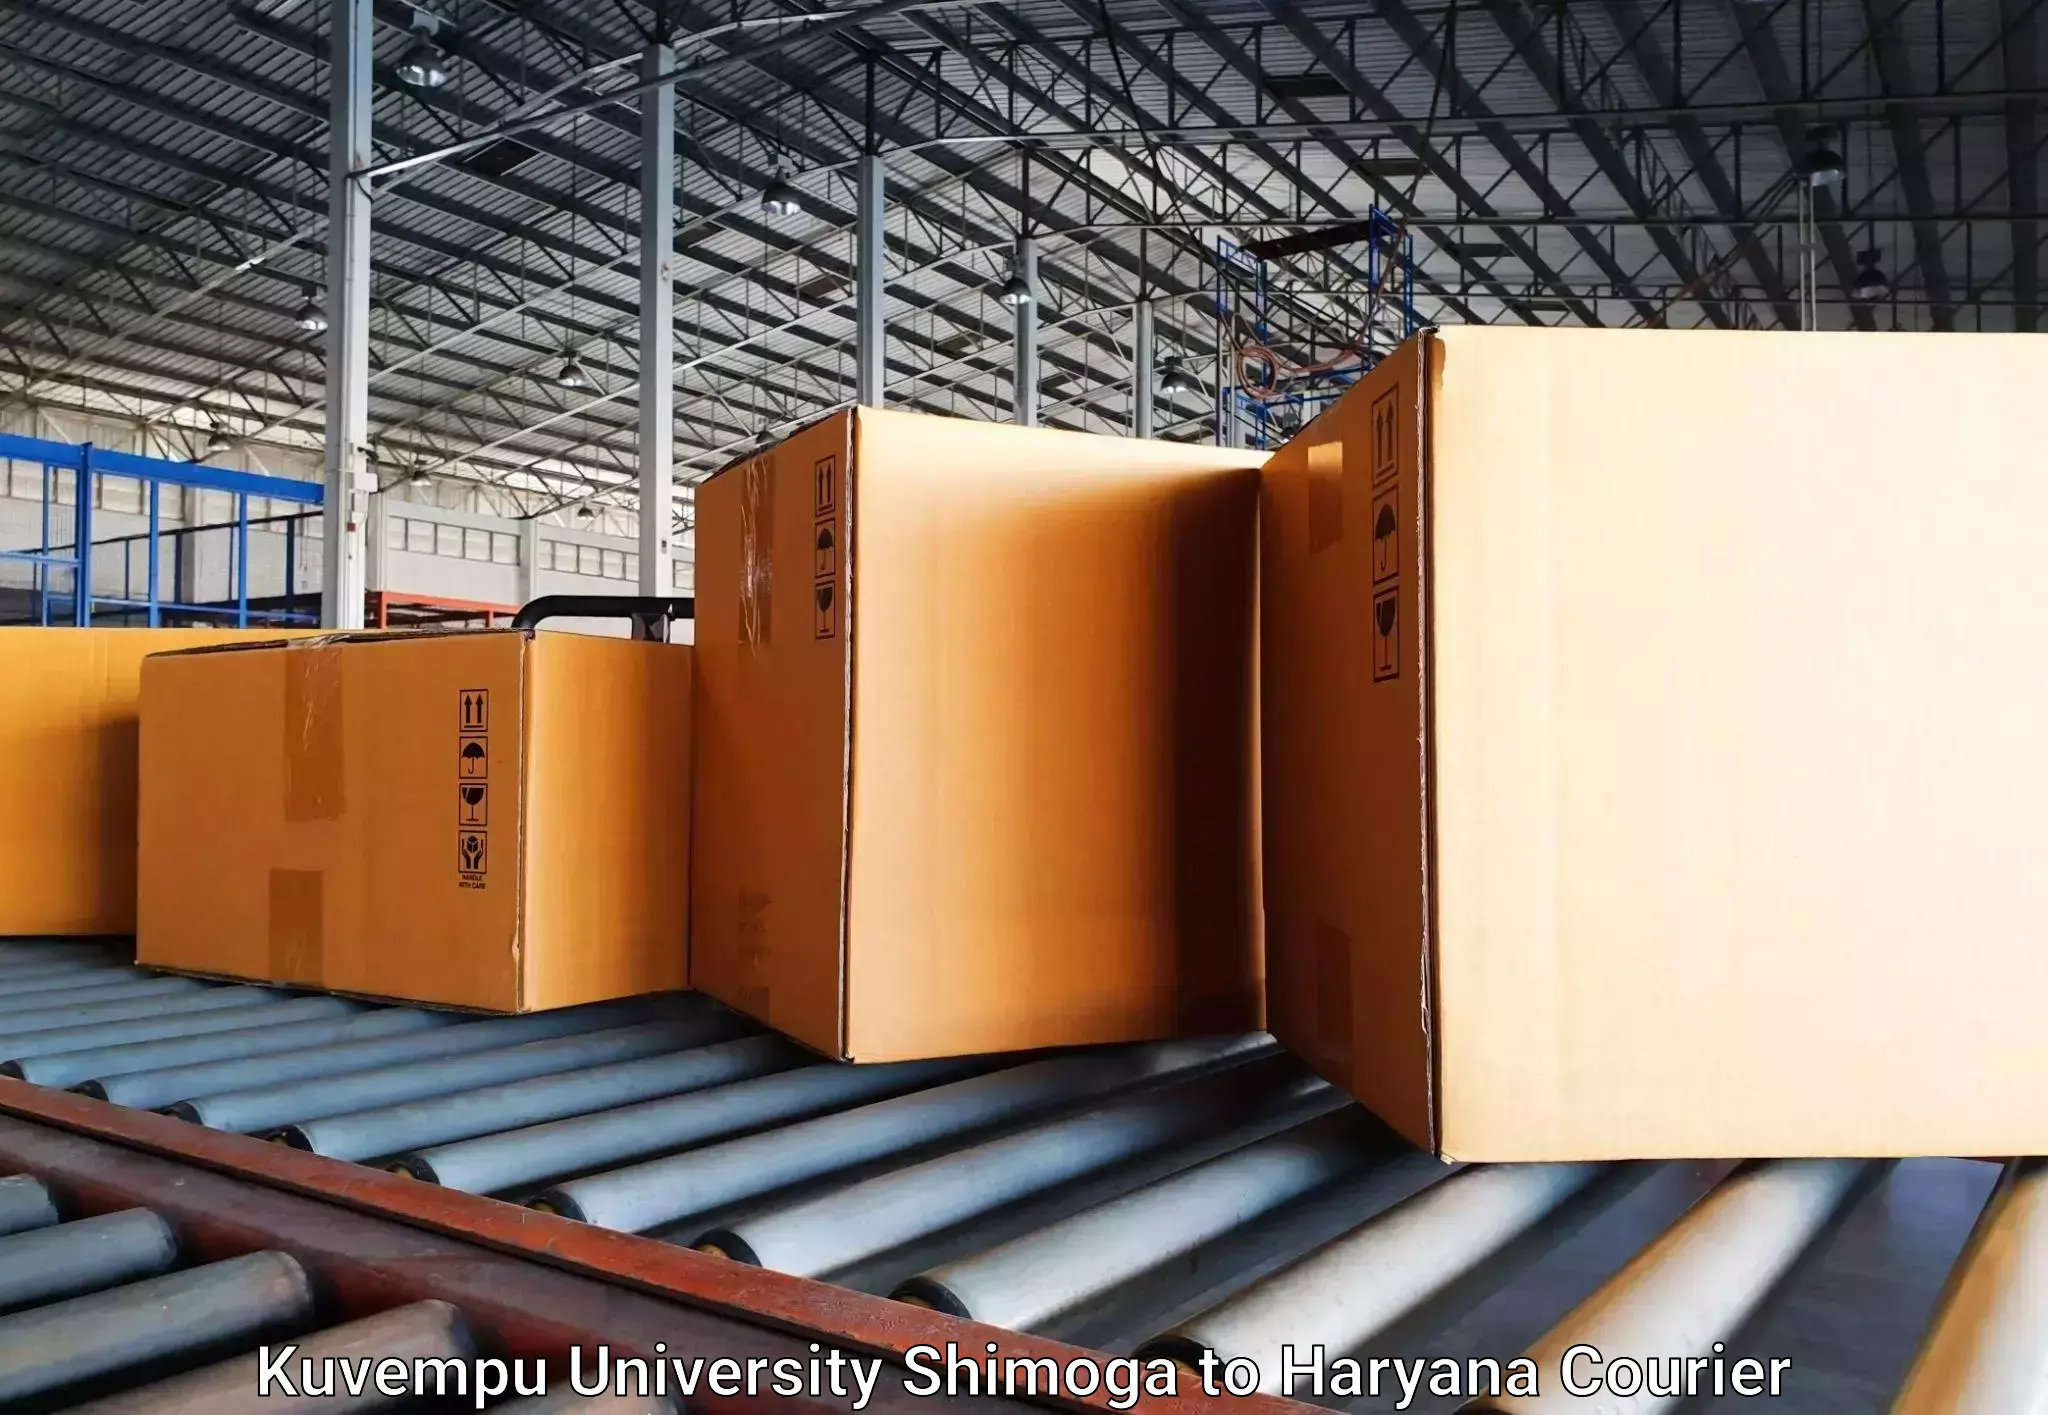 Luggage transport company Kuvempu University Shimoga to Gurgaon